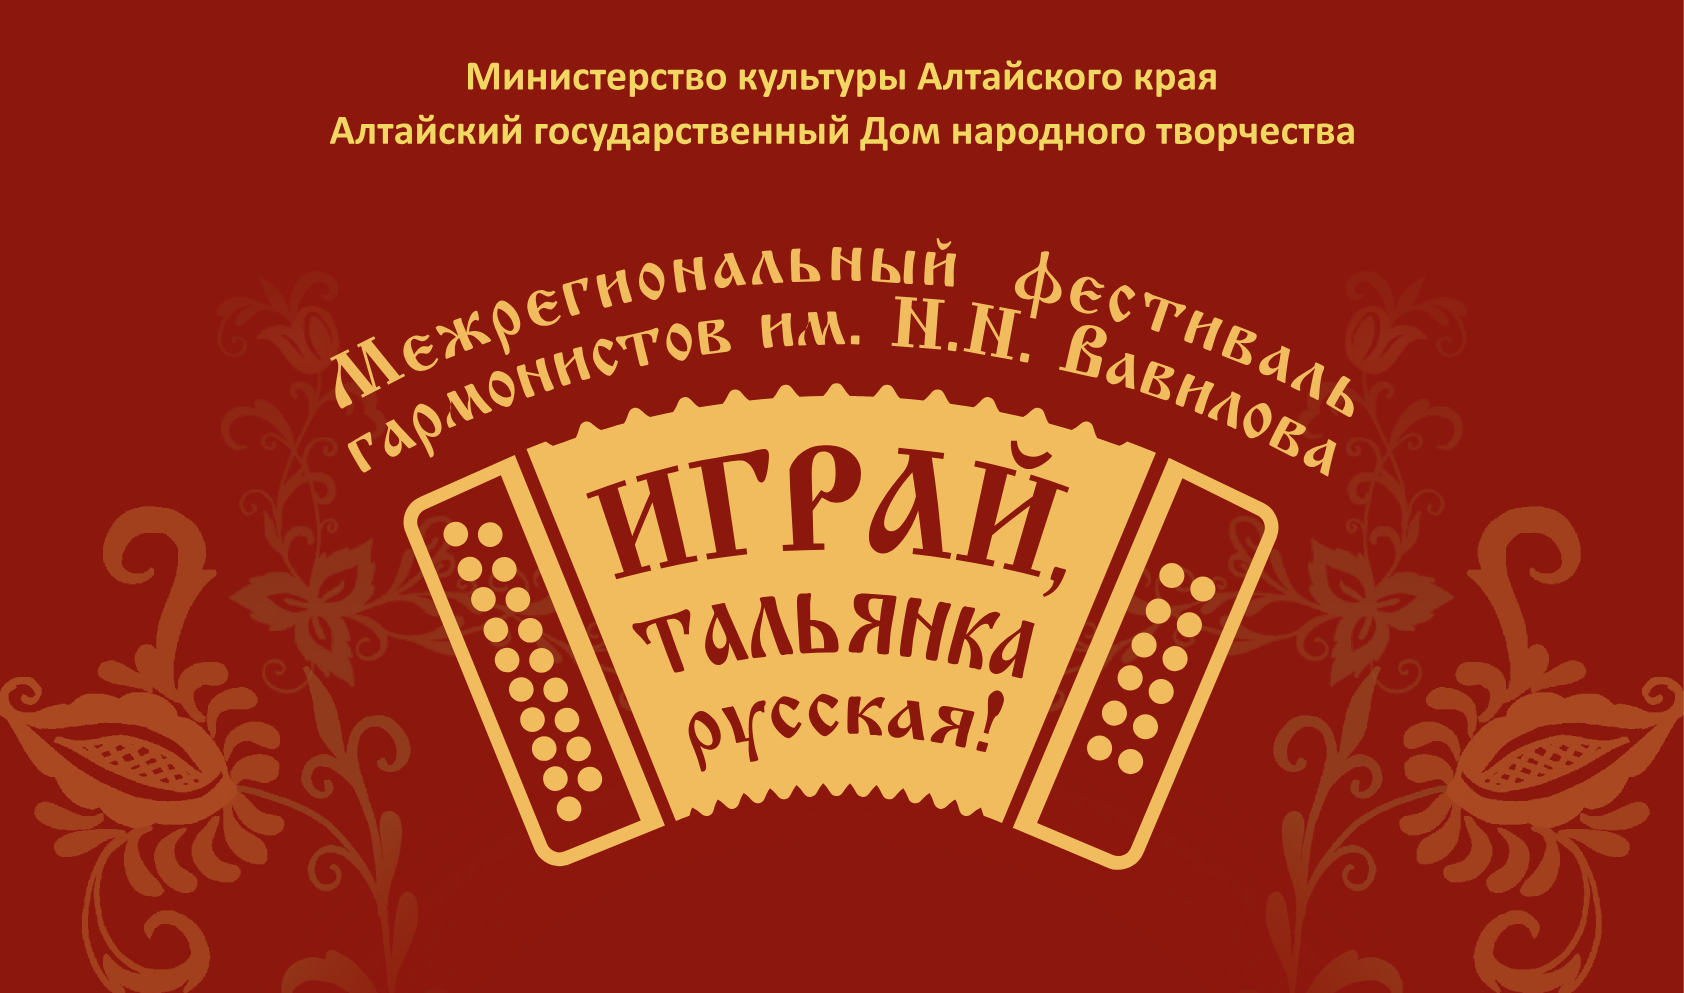 О чём поют меха: в Барнауле прошёл фестиваль гармонистов